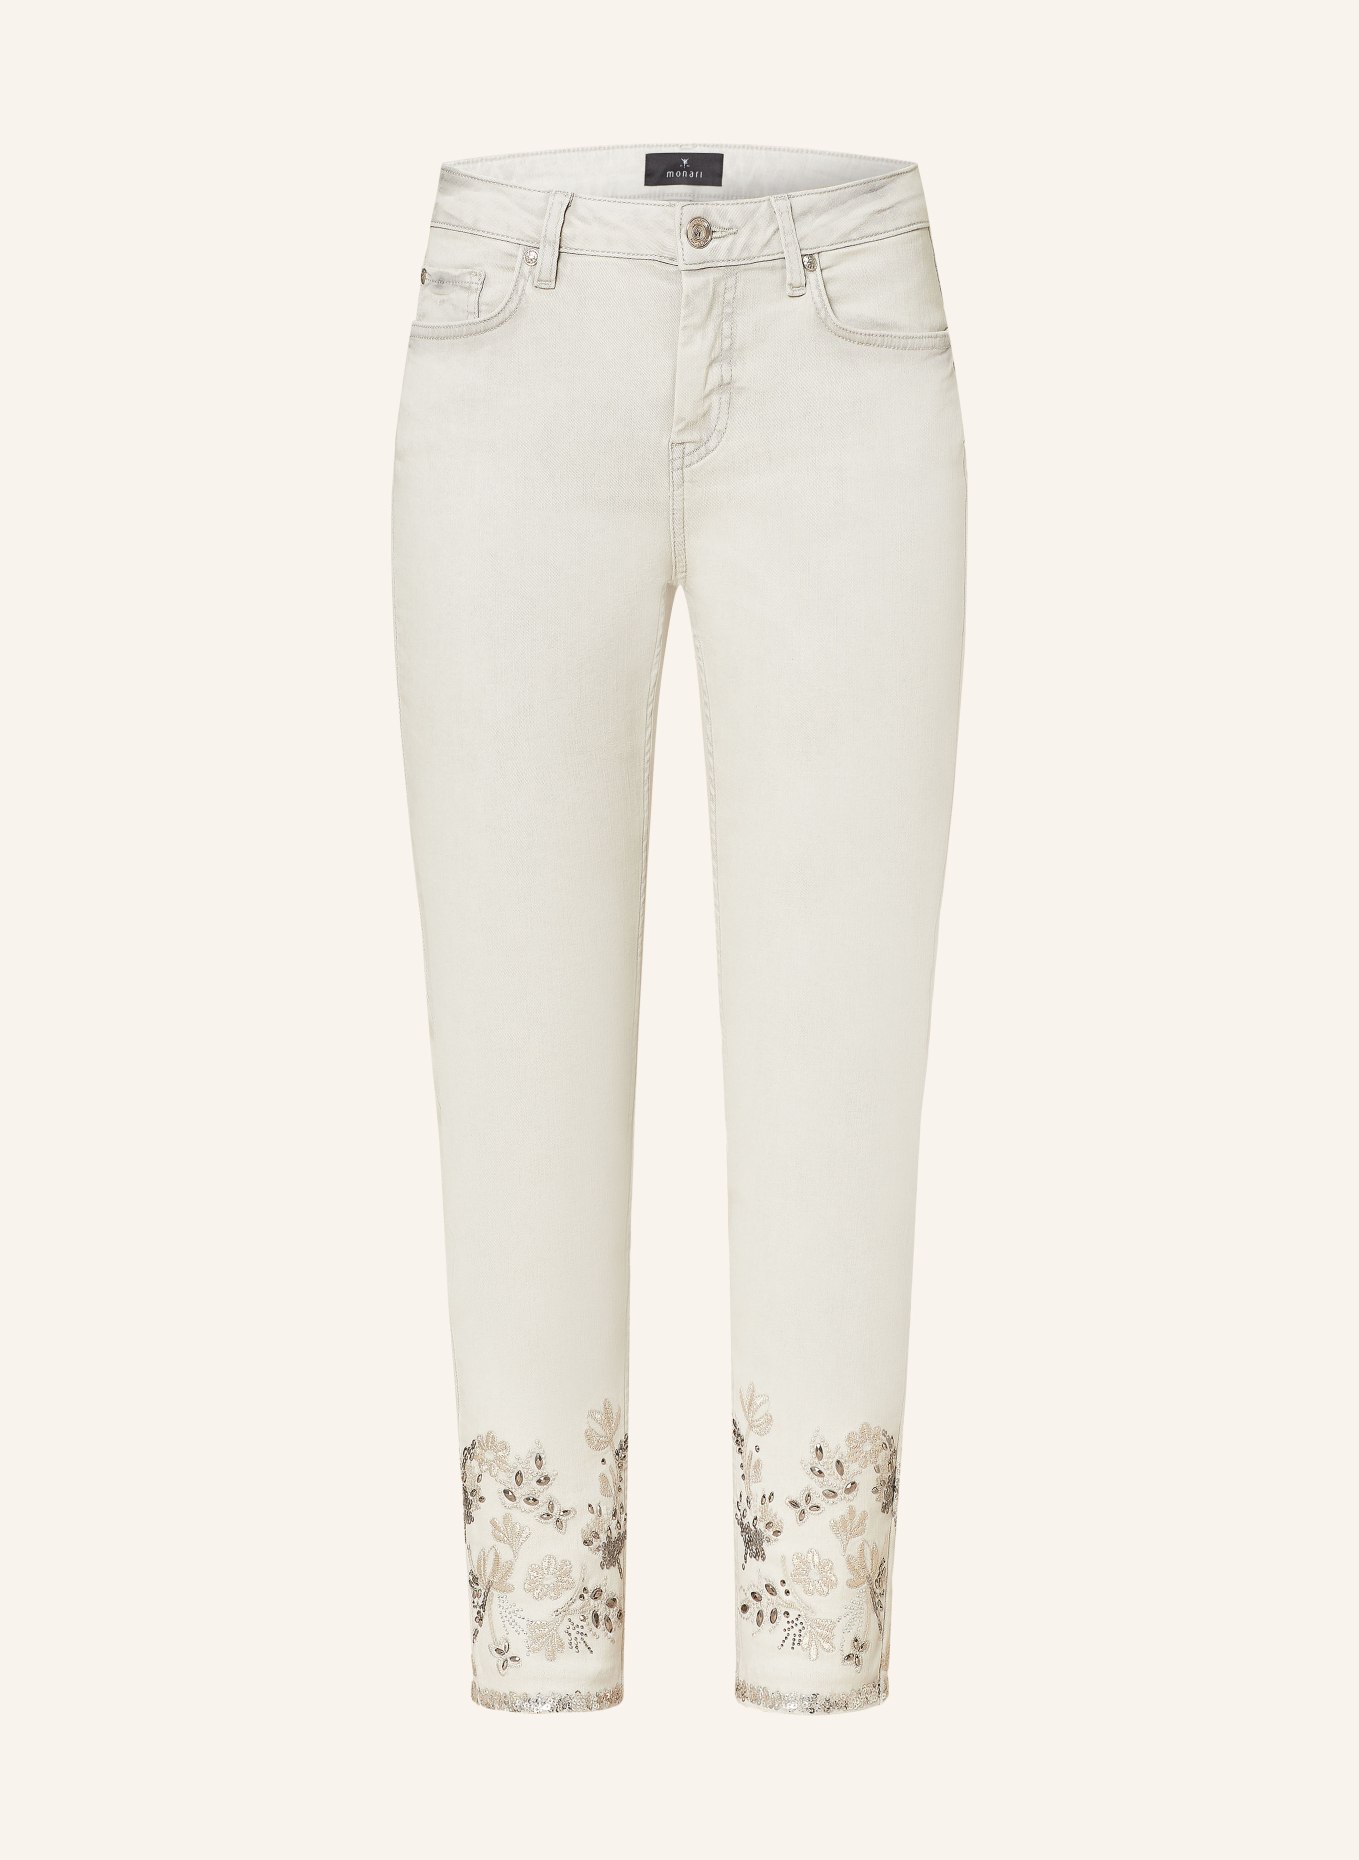 monari 7/8-Jeans mit Schmucksteinen und Pailletten, Farbe: 115 marmor (Bild 1)